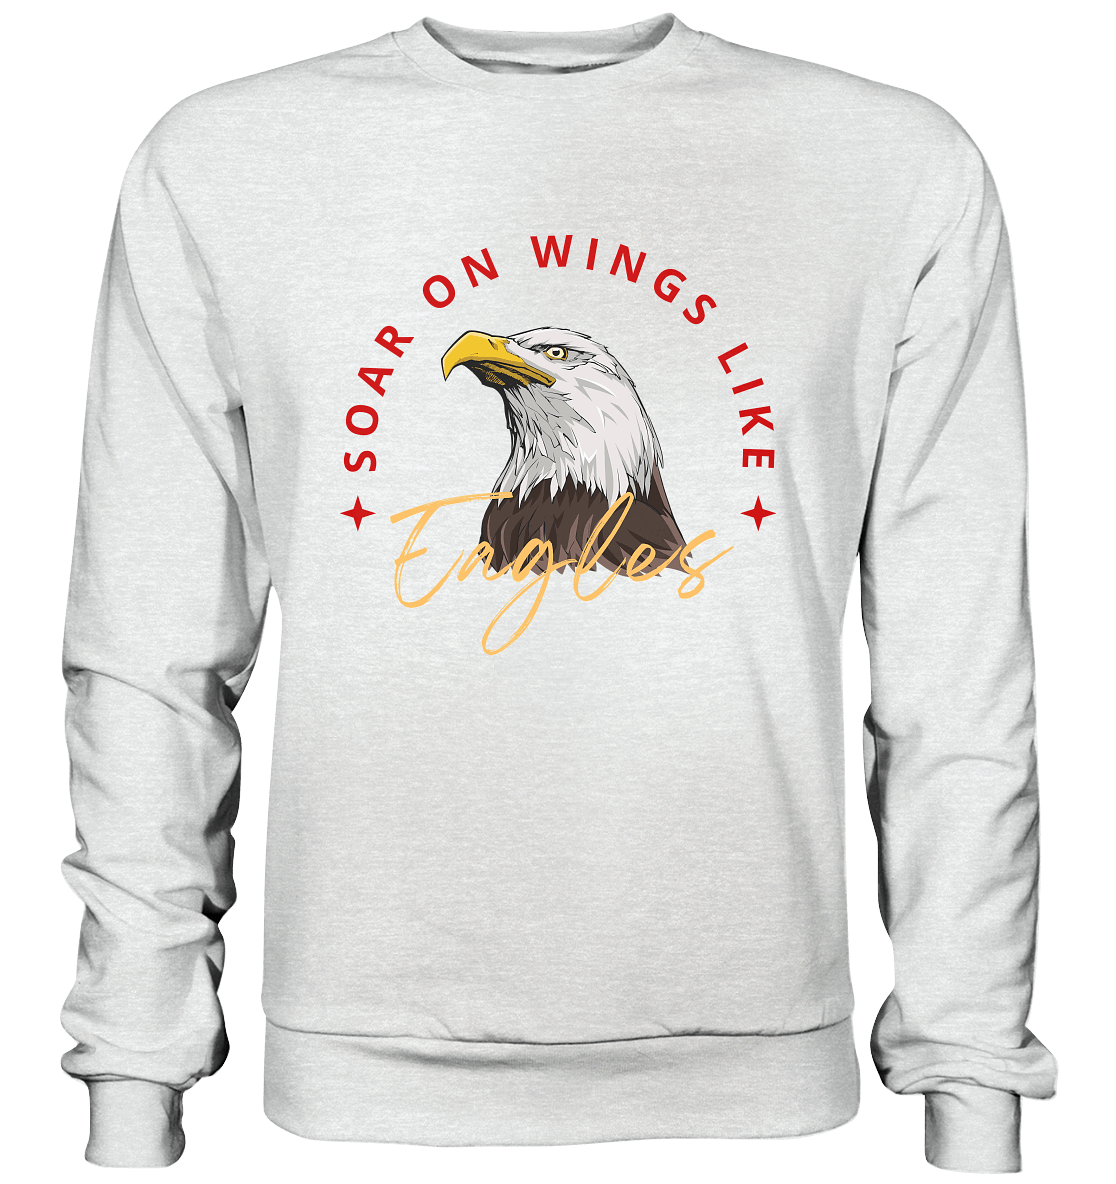 Flügel der Hoffnung - Inspiriert von Jesaja 40:31  - Premium Sweatshirt